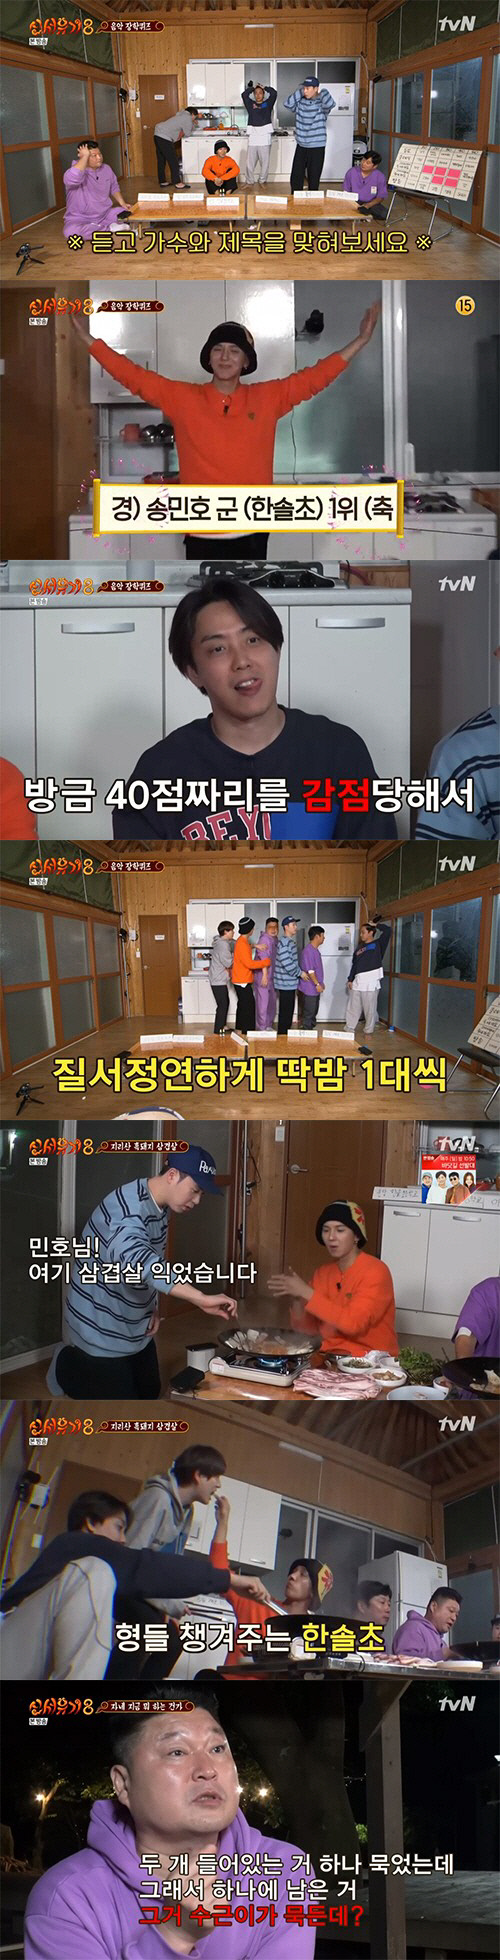 tvN ‘신서유기8-옛날 옛적에’ 방송 캡처